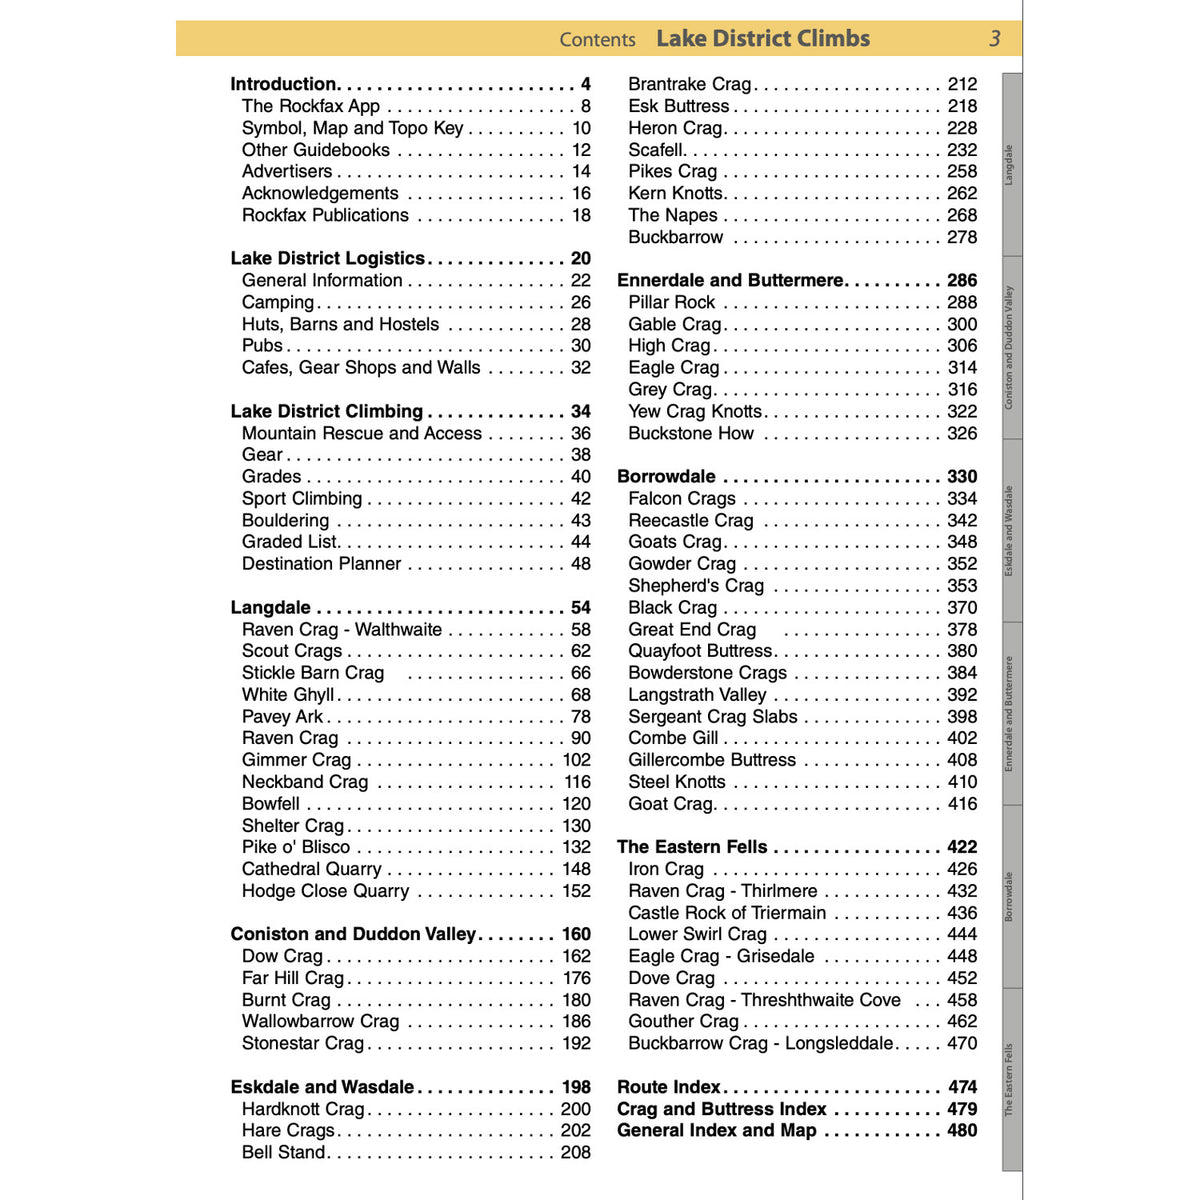 Lake District Climbs (RockFax) contents list